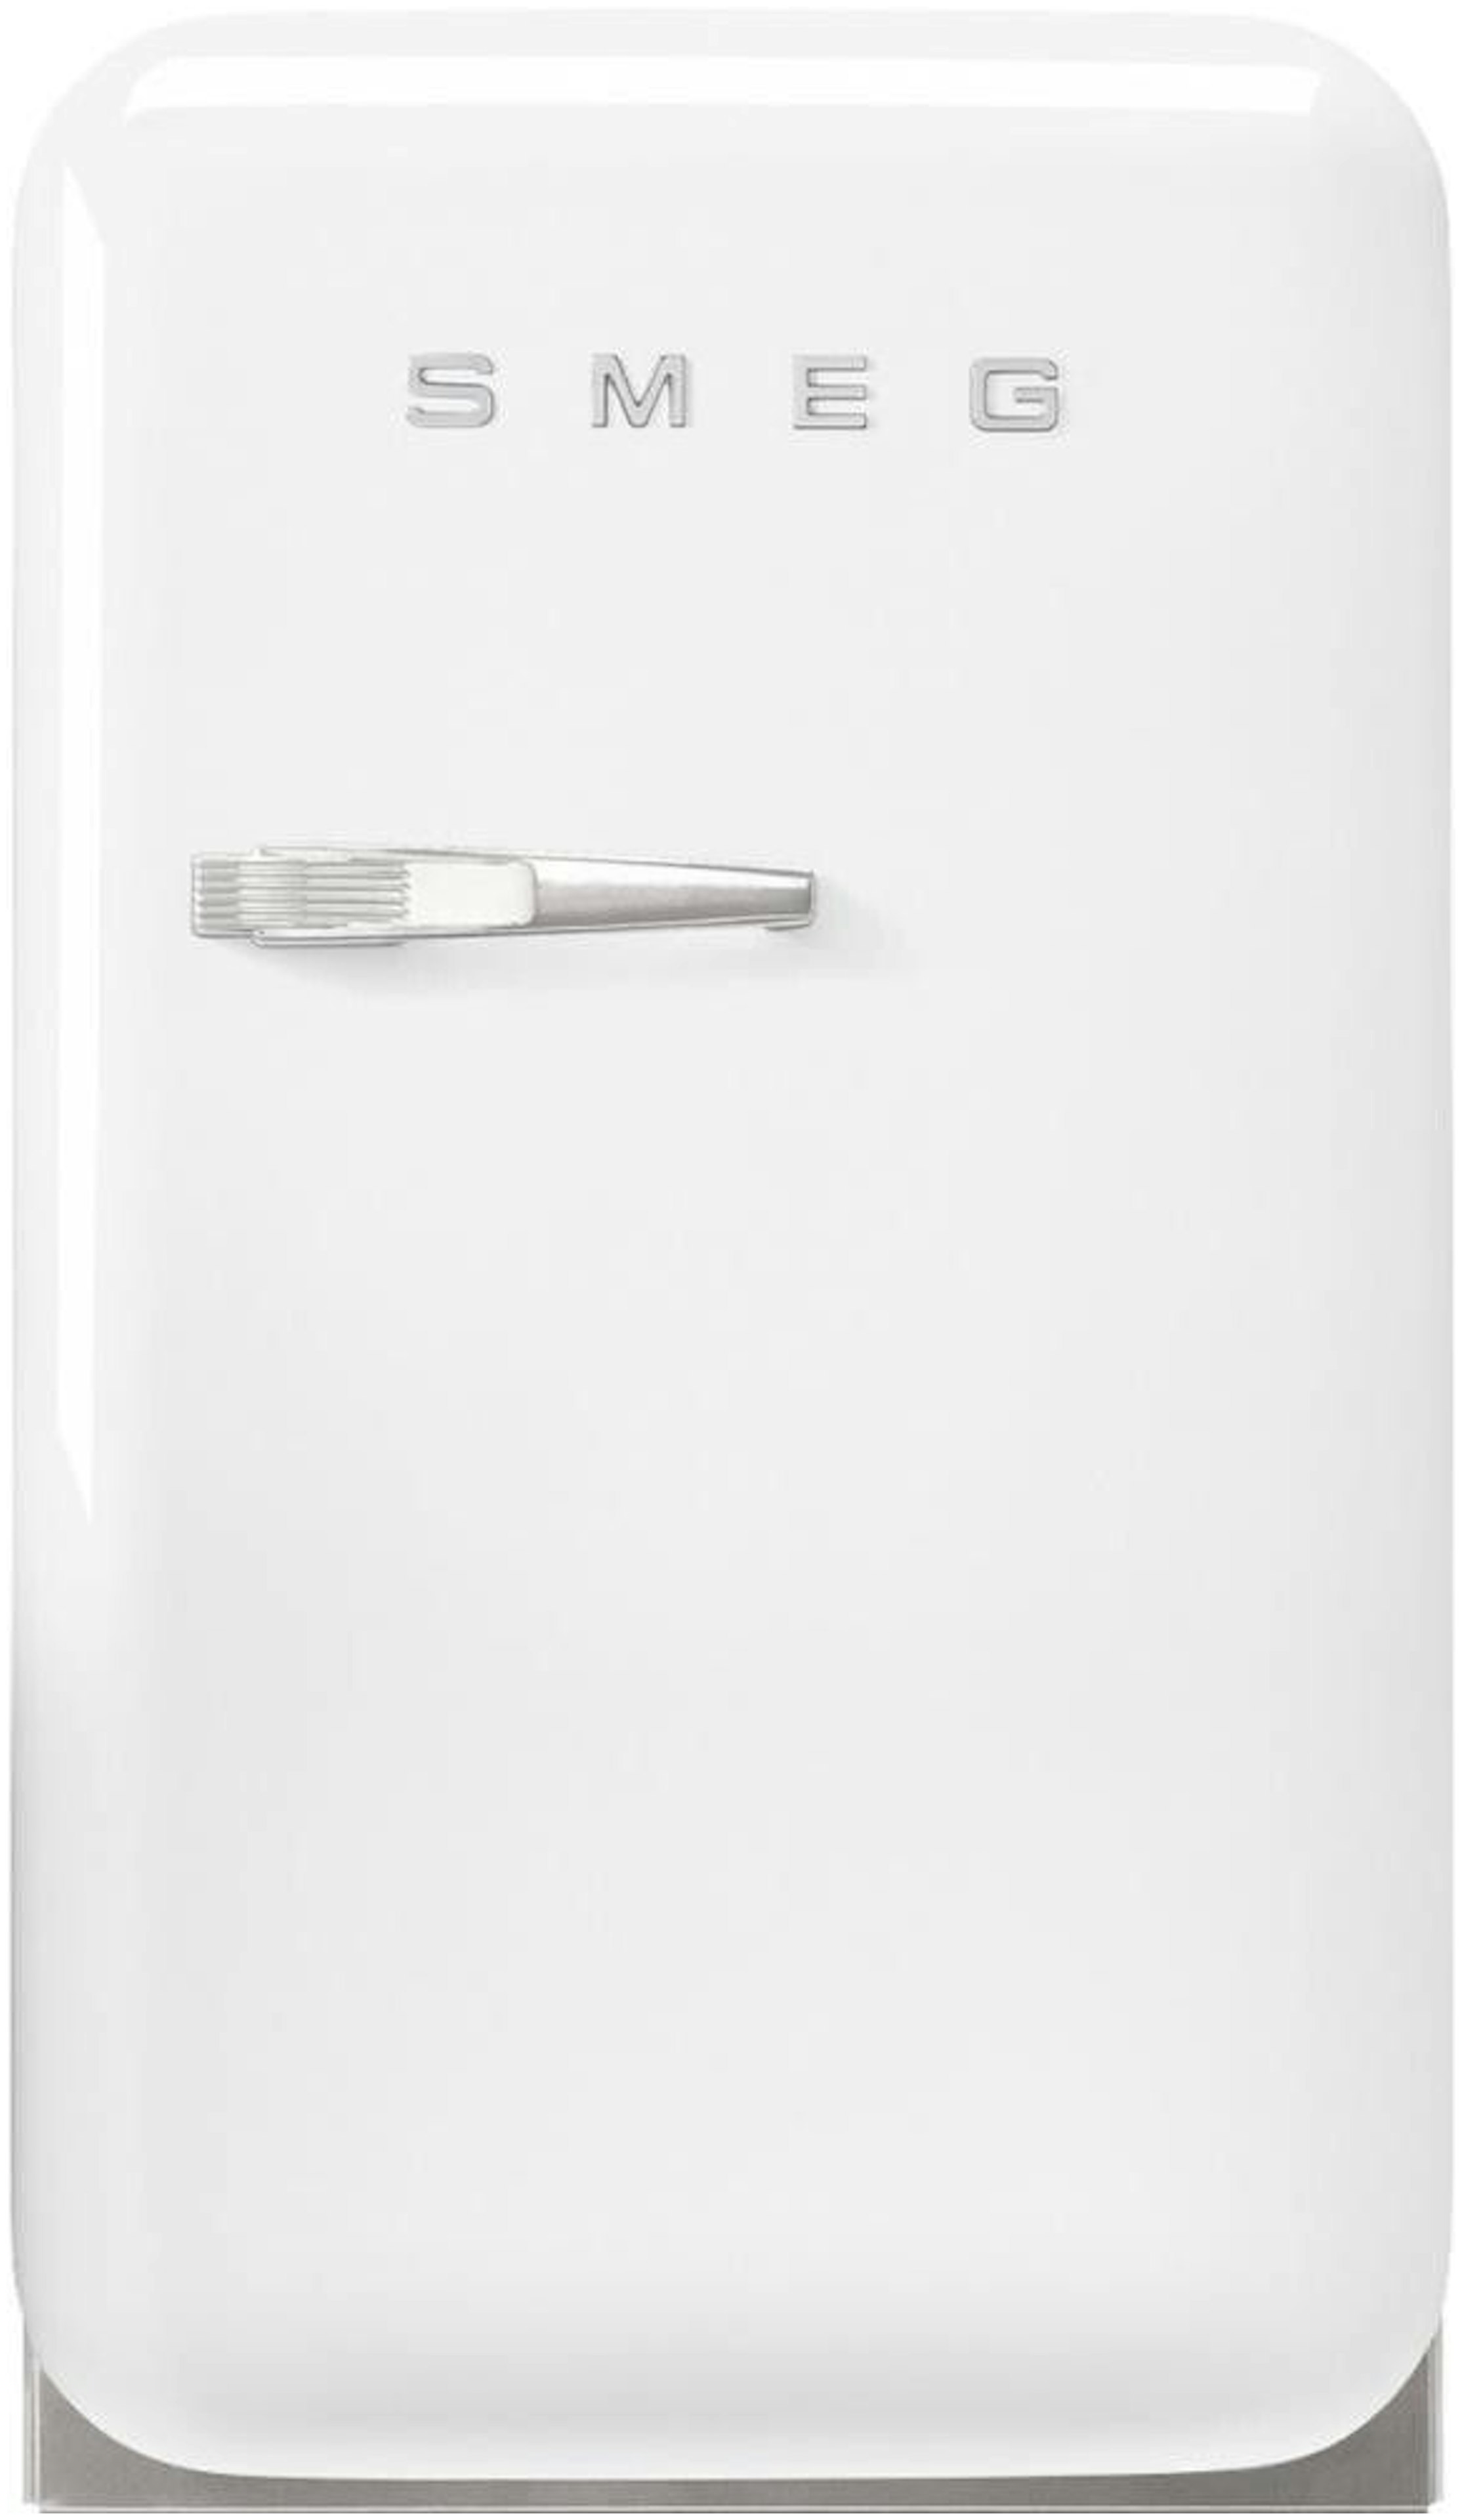 Kleine koelkast - Klein model koelkasten van A-merken